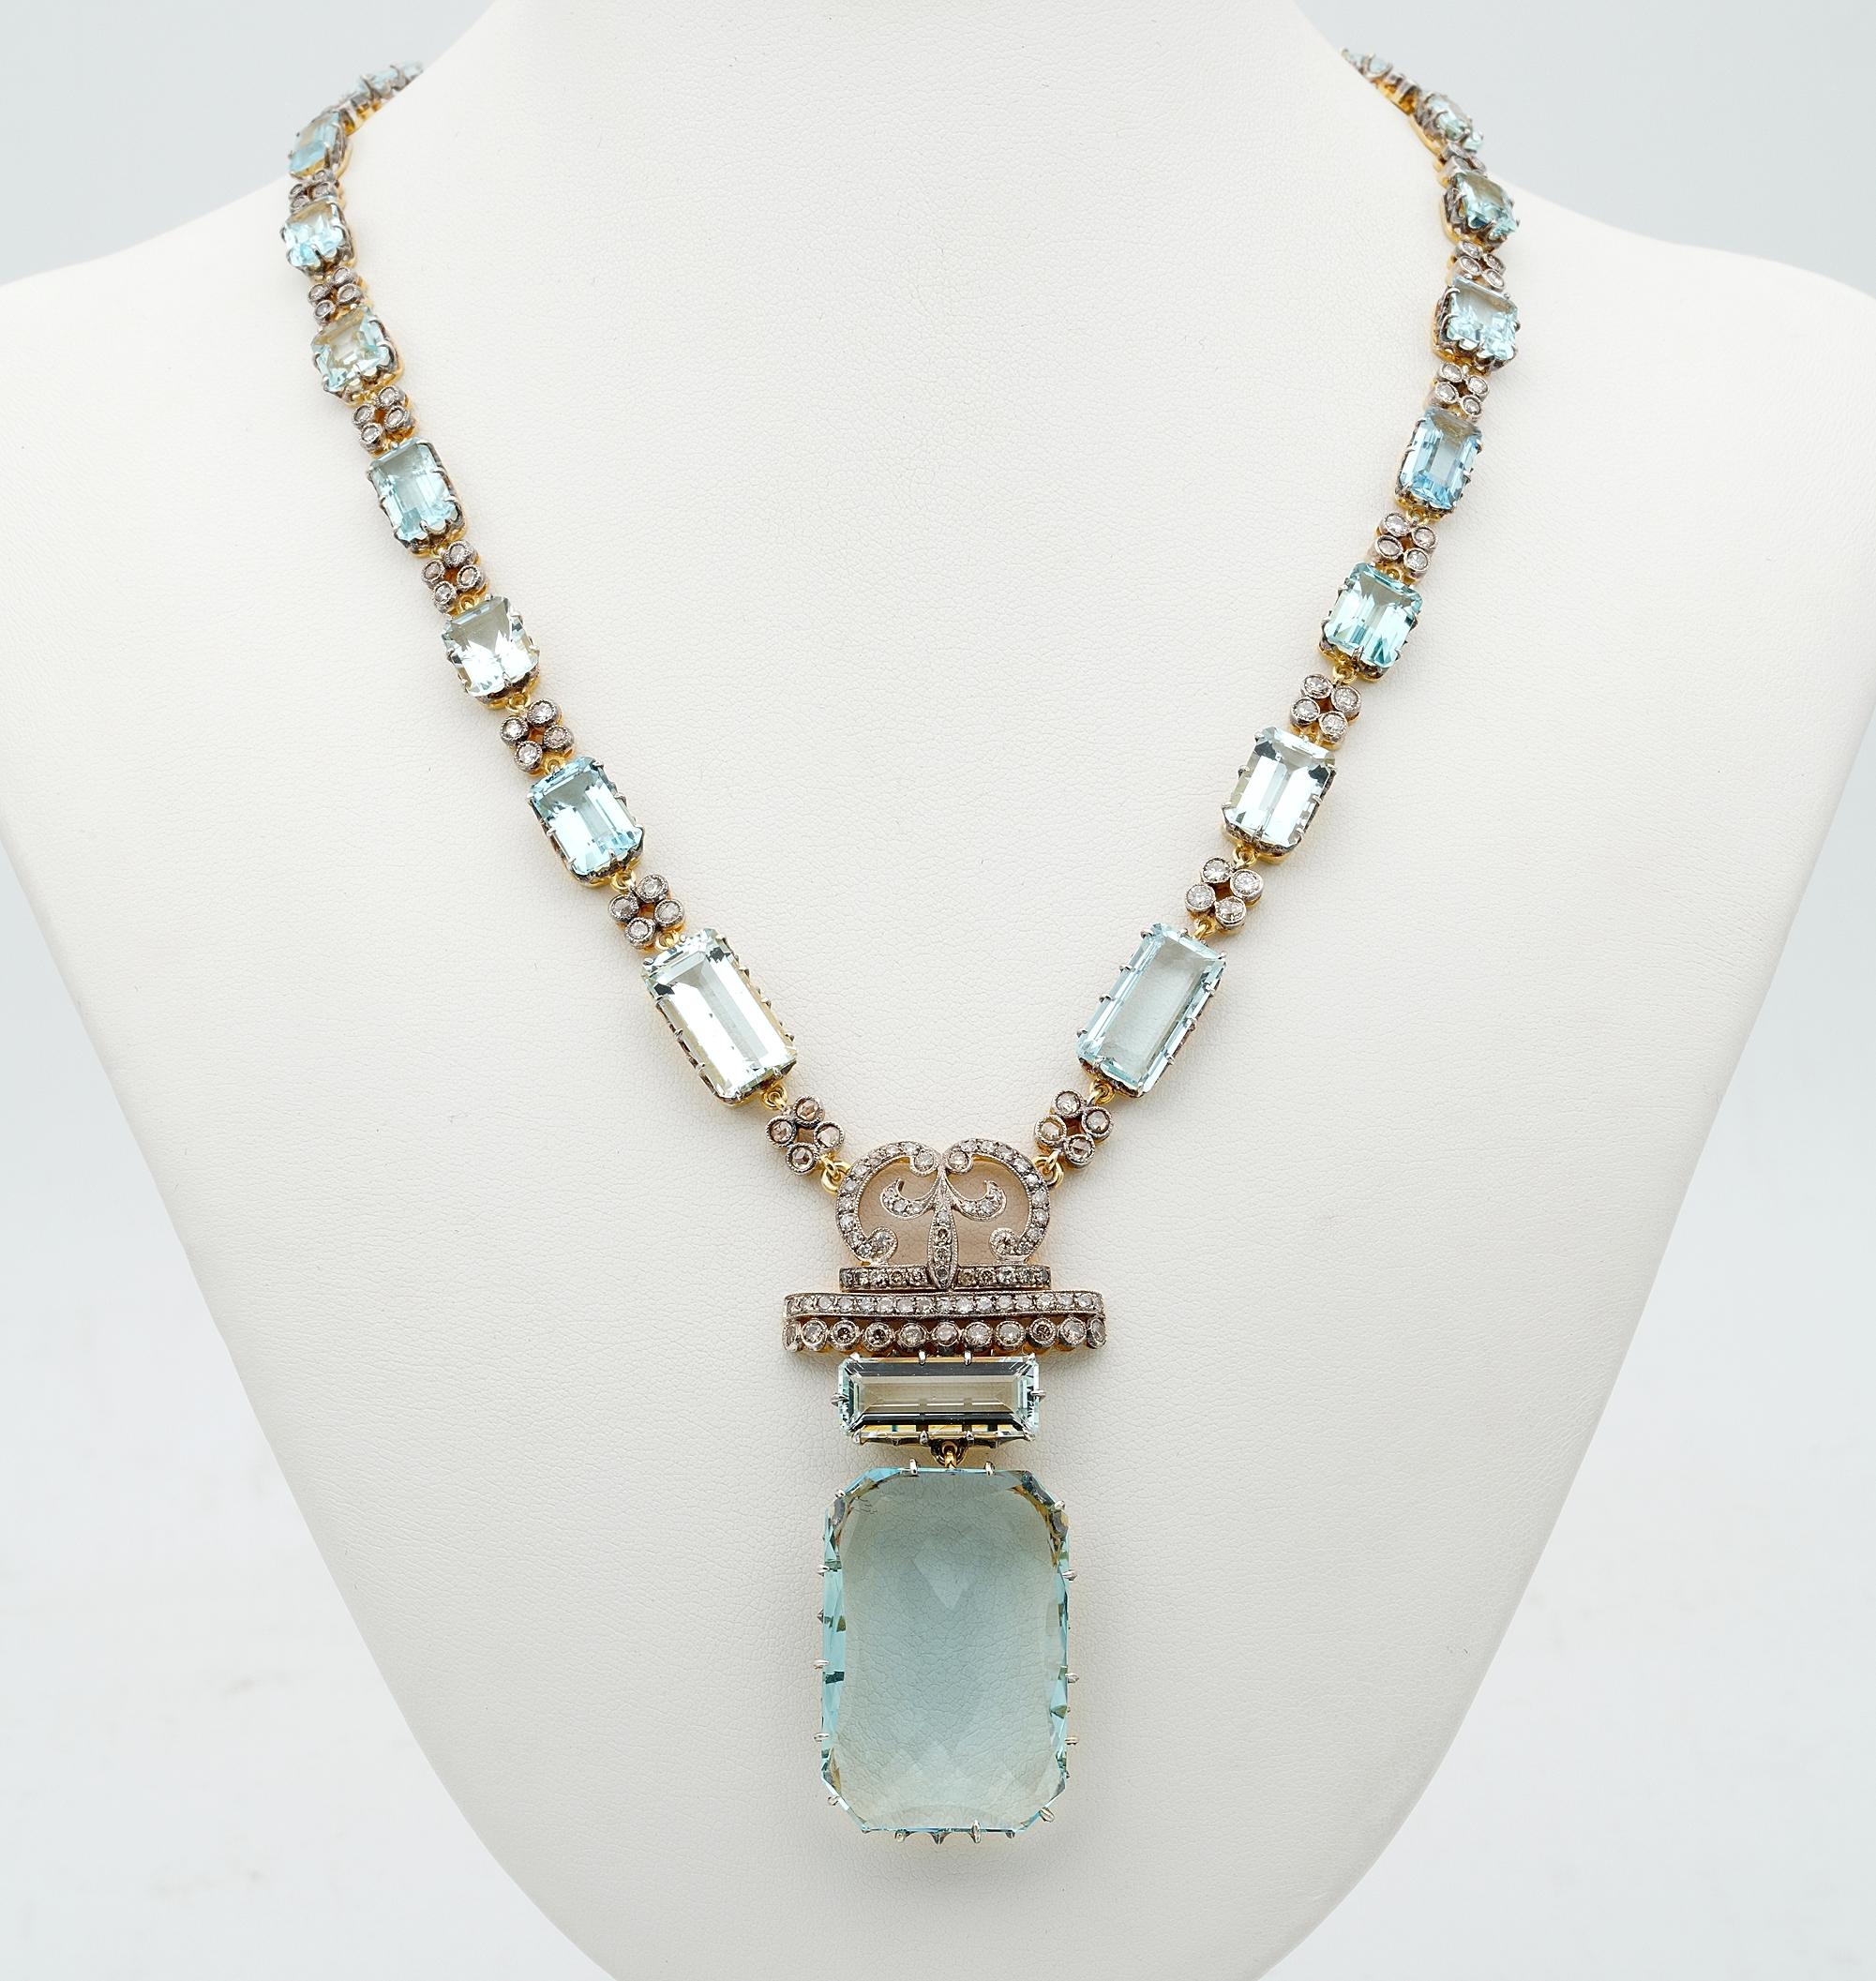 Seltene Schönheit
Eine beeindruckende Halskette, die in den späten 30/40er Jahren als Unikat geschaffen wurde.
Durchgehend mit natürlichen, unbehandelten Aquamarinen besetzt, die in verschiedenen Größen zum Design passen
Ergänzt durch Diamanten im